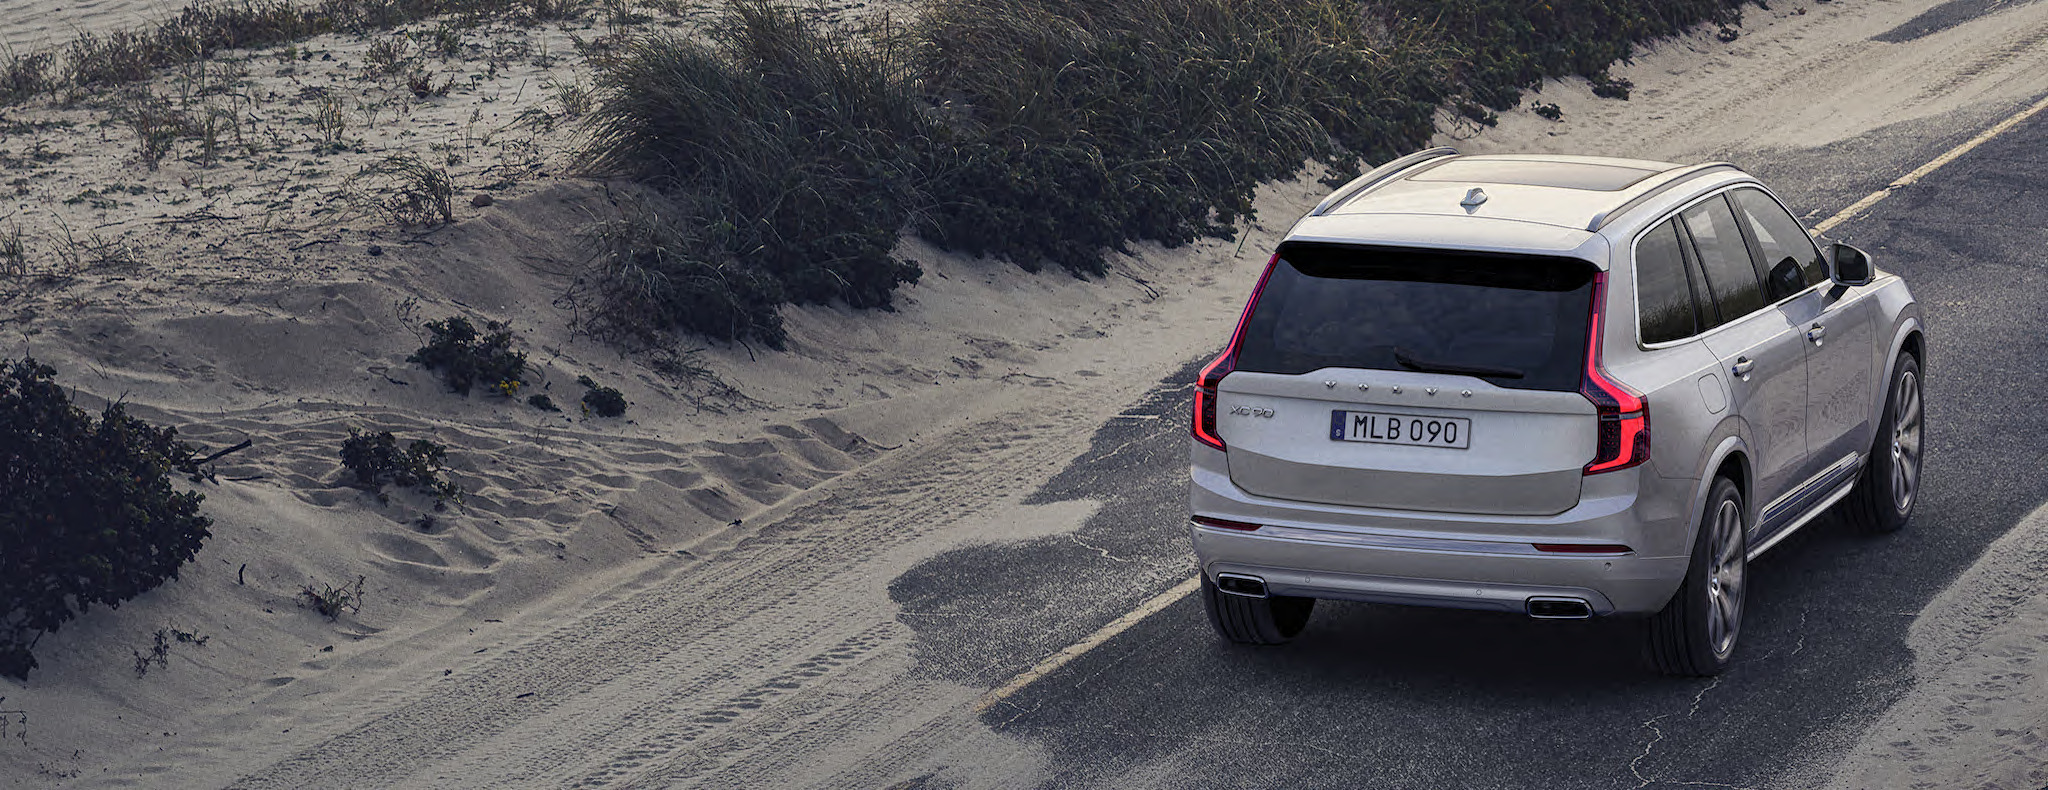 Volvo XC90 steht auf einer Straße vor Dünen – Rückansicht